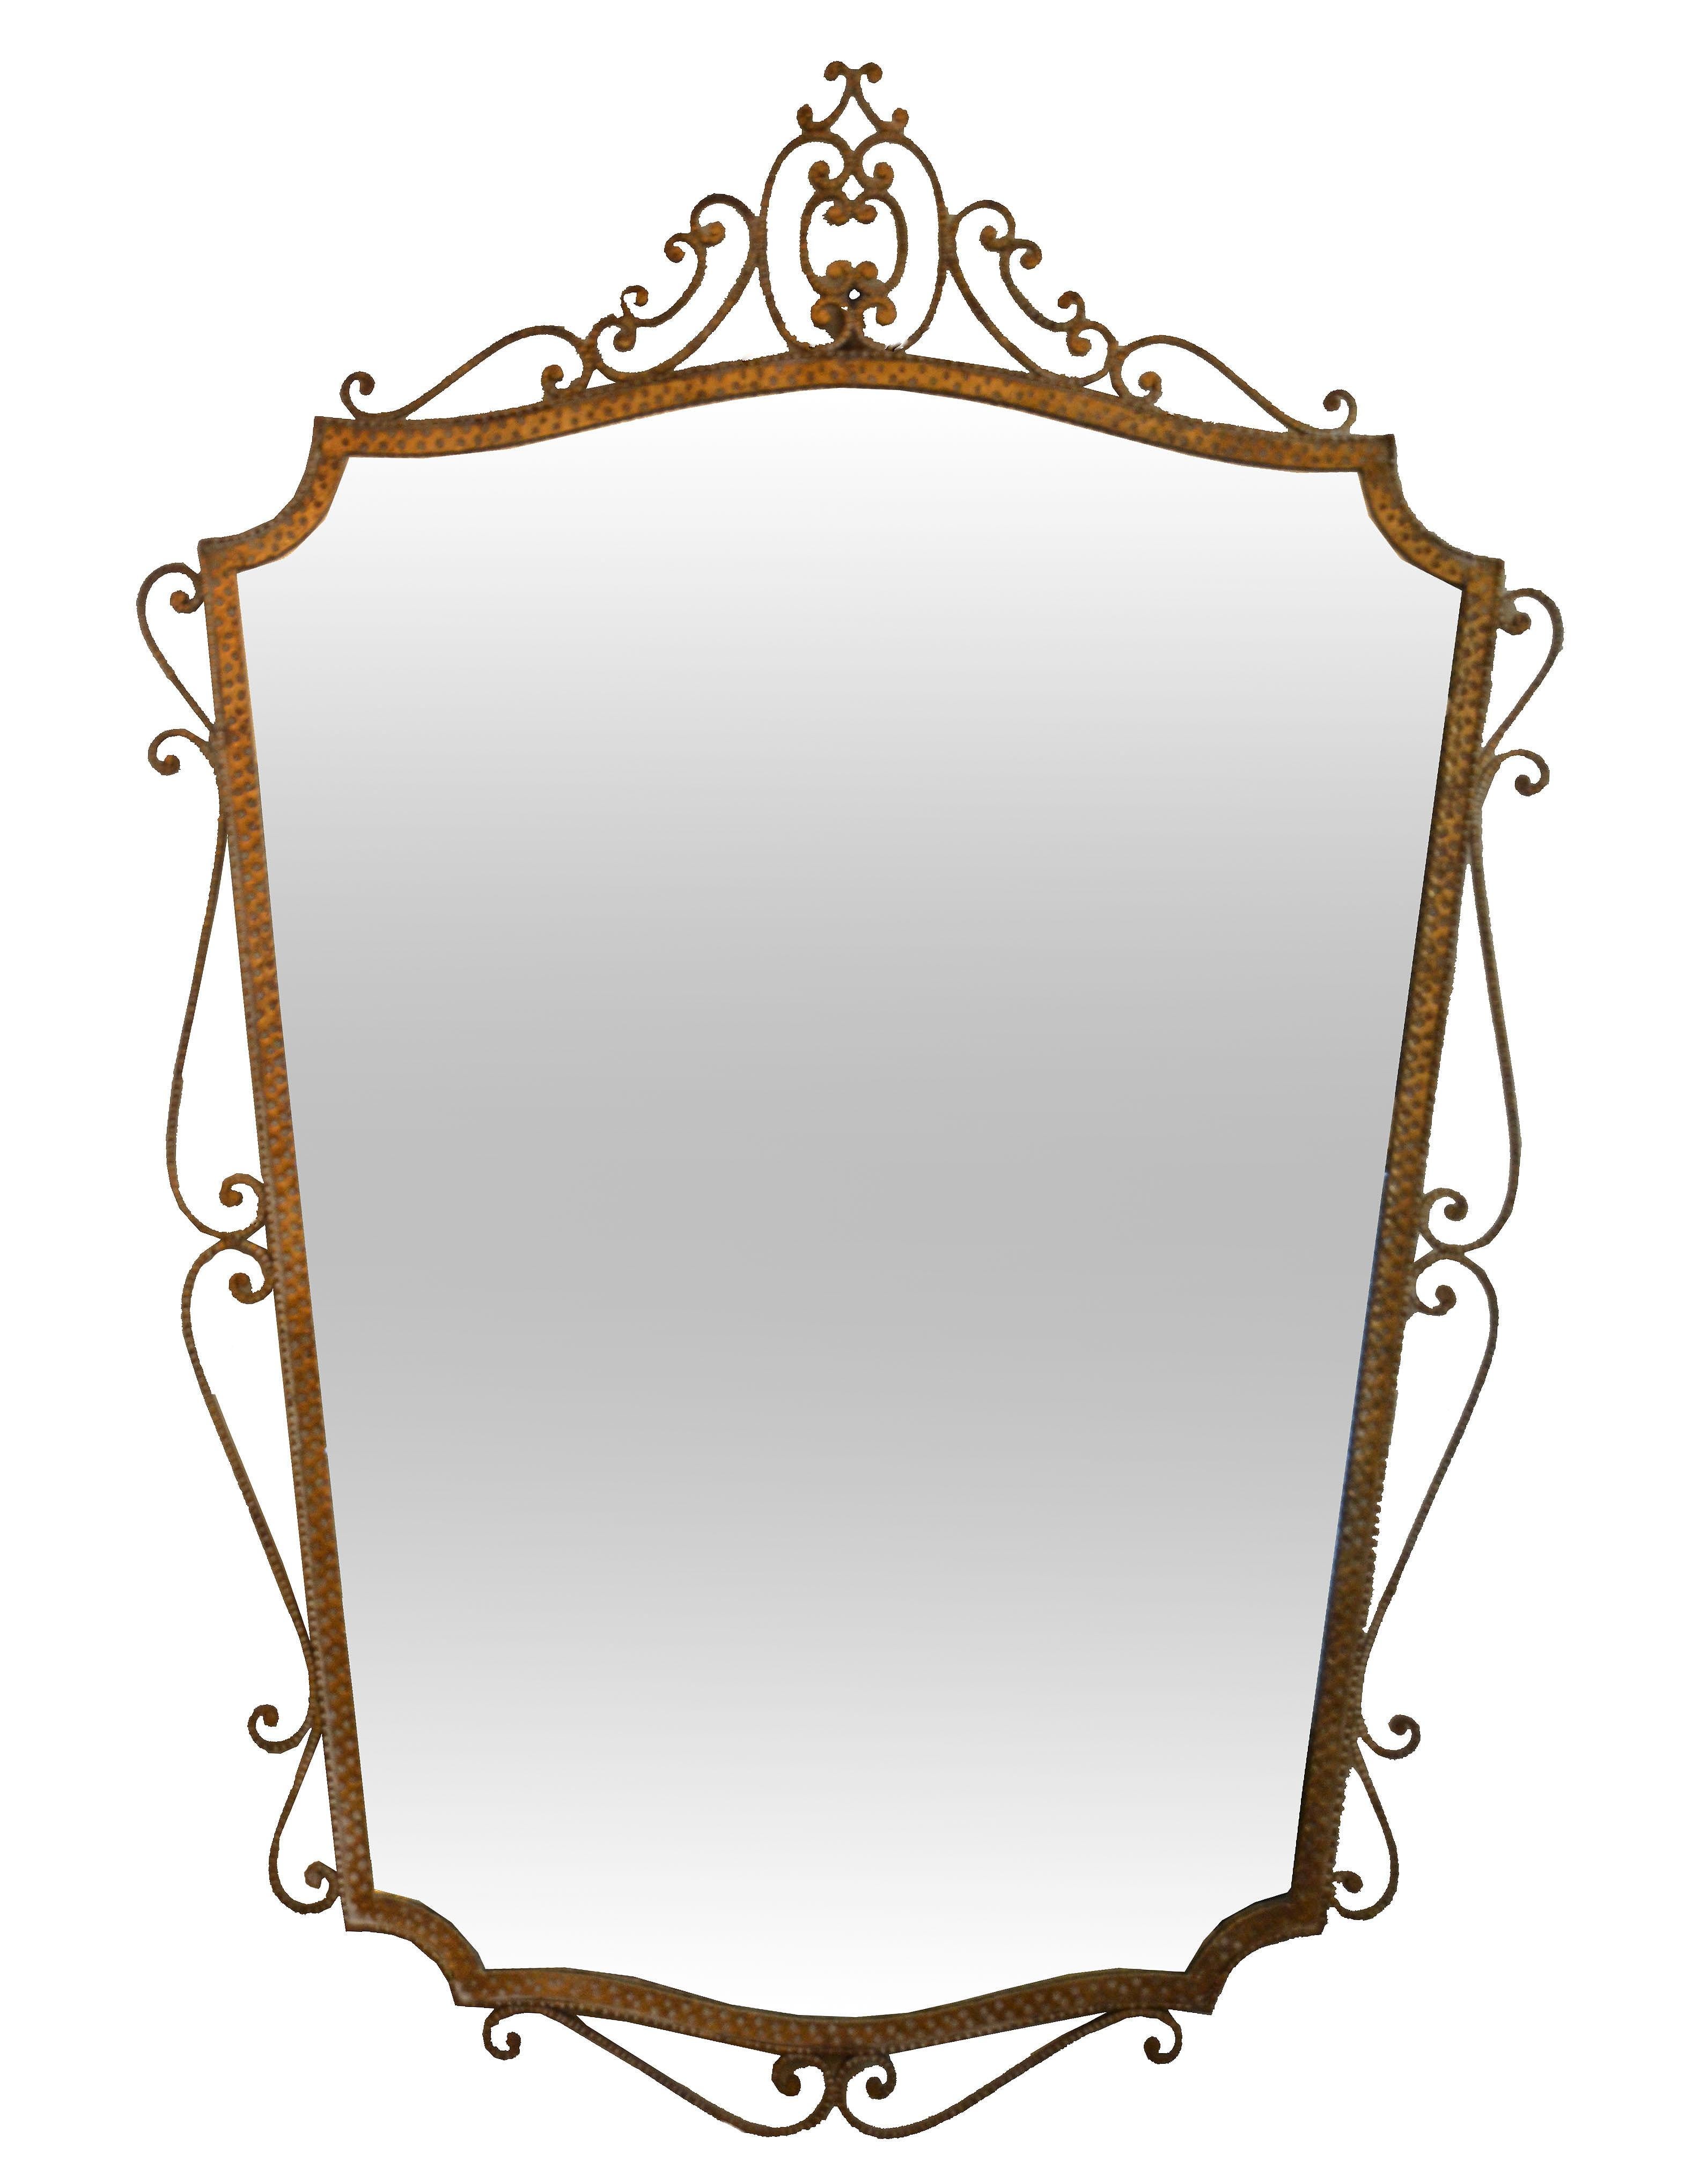 miroir mural ou miroir console en fer forgé doré à la feuille d'or des années 1950 par Pier Luigi Colli.
Le miroir rectangulaire est bordé de fer forgé doré et martelé à la main.
Un artisanat étonnant fabriqué en Italie.
      